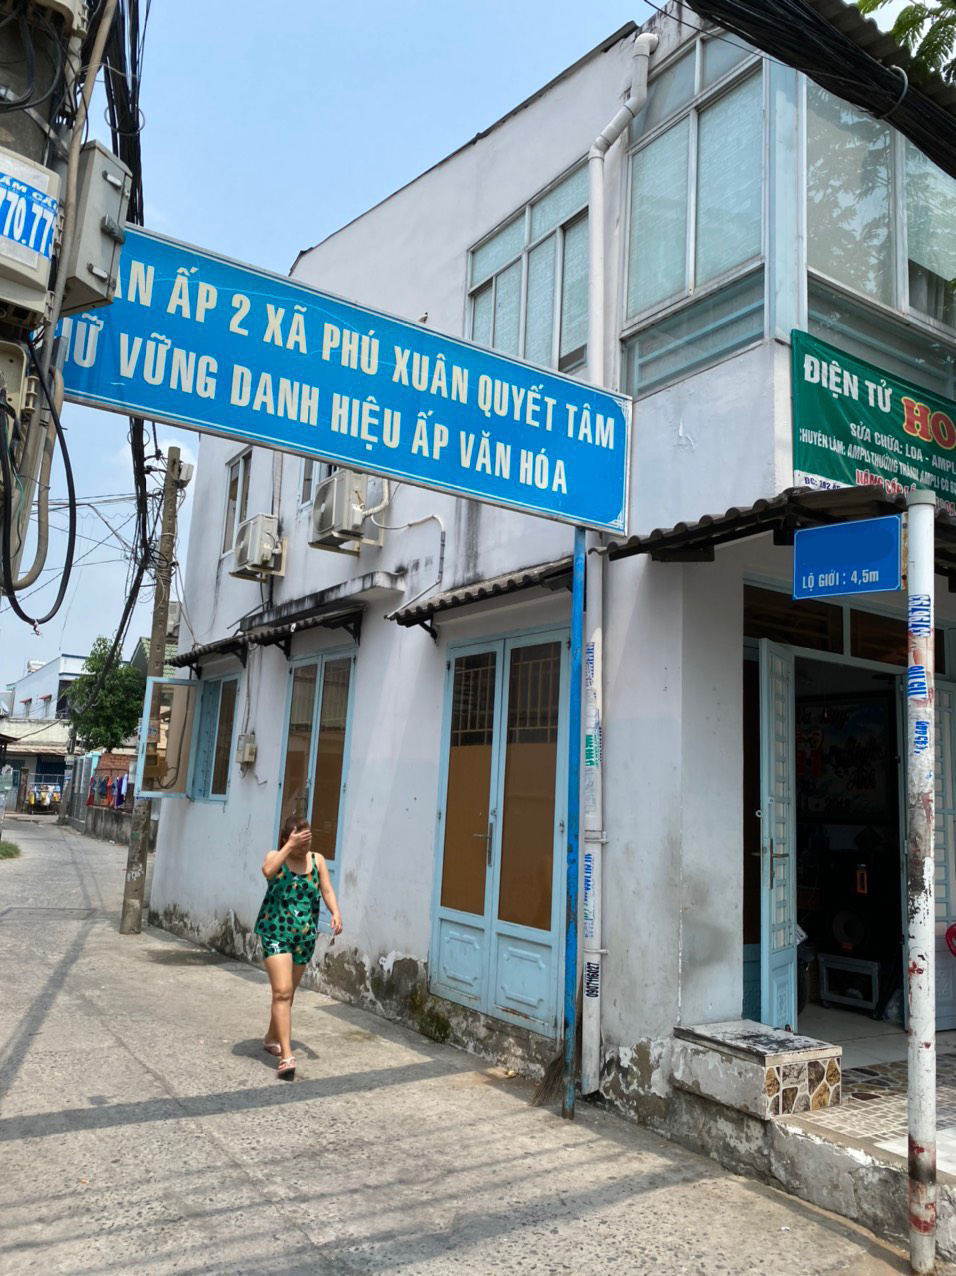 Bán nhà hẻm đường Nguyễn Bình xã Phú Xuân huyện Nhà Bè